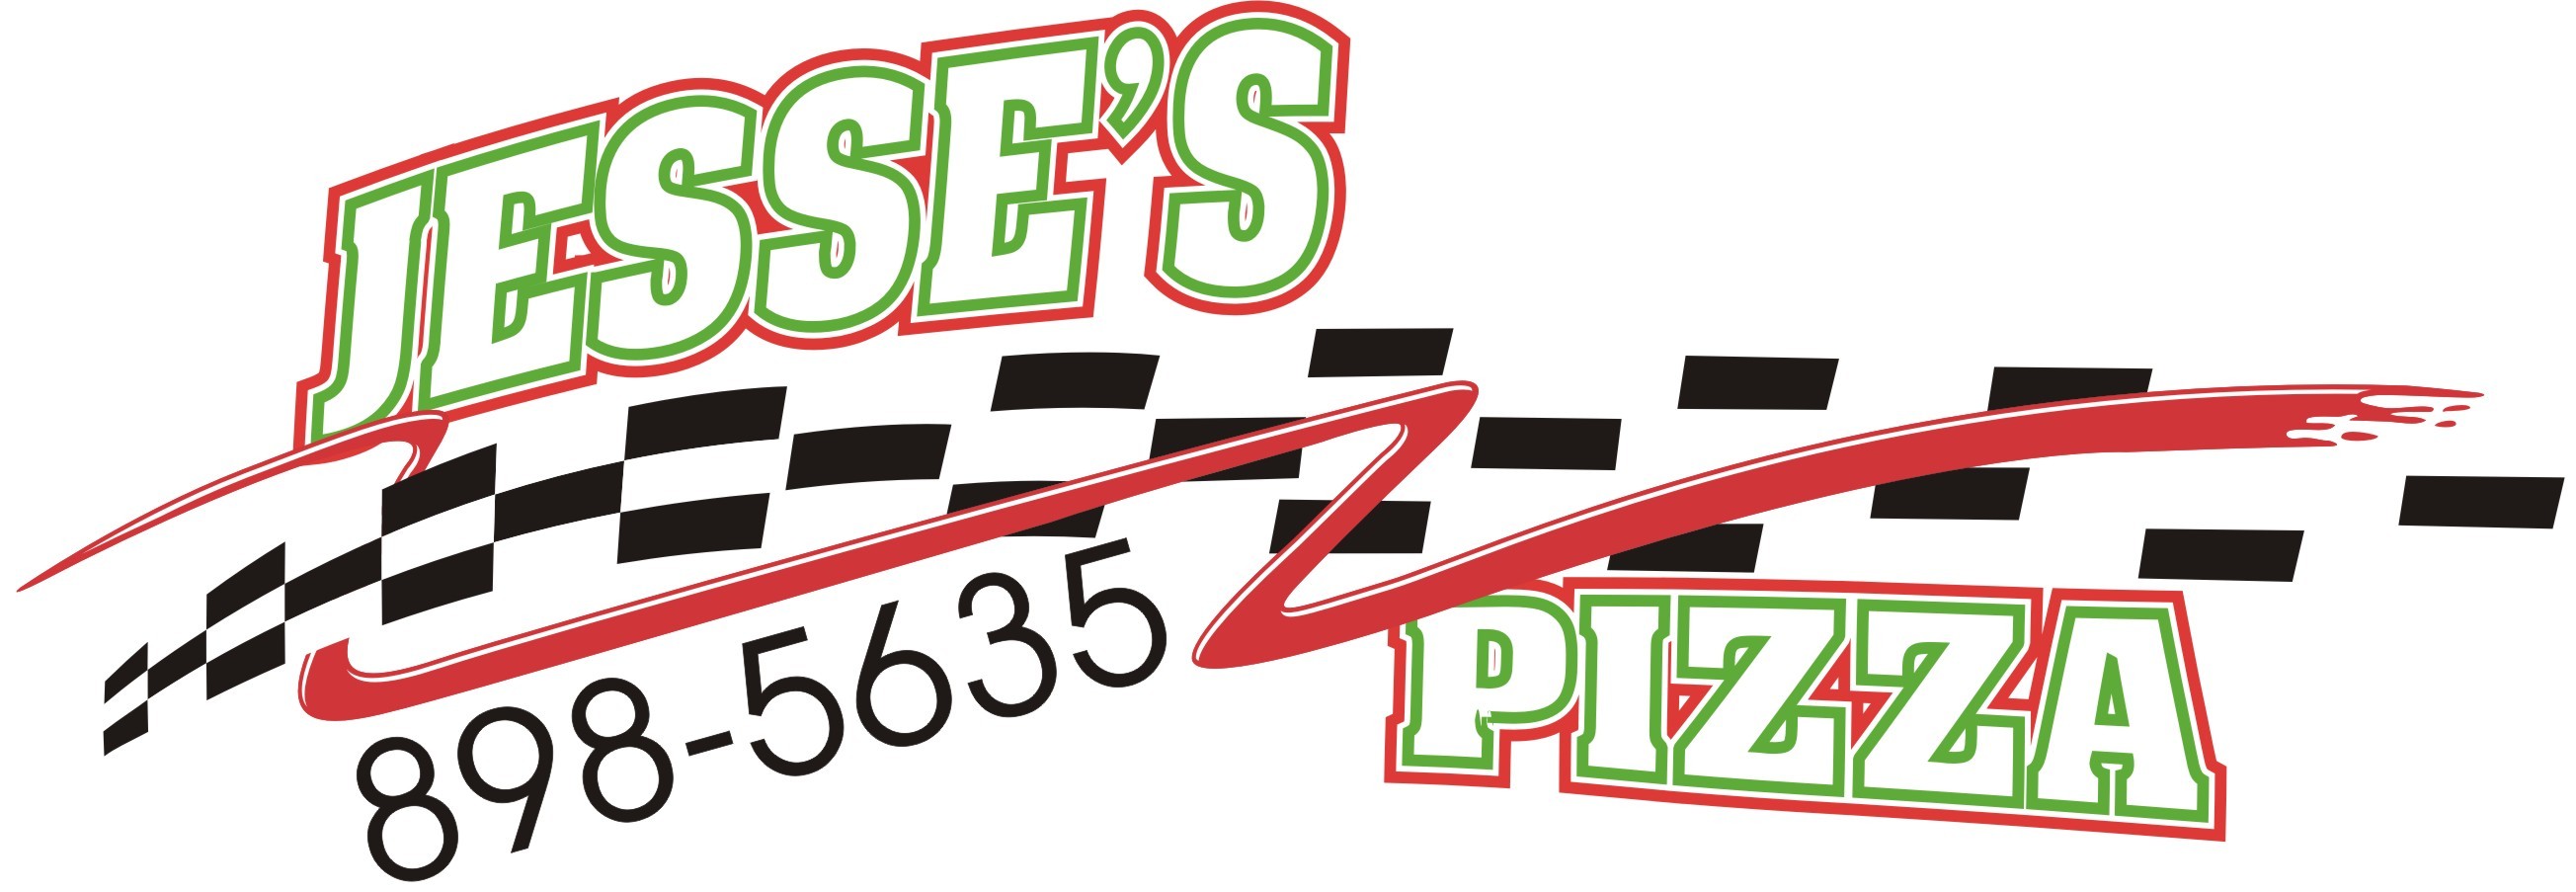 Jesse's Pizza